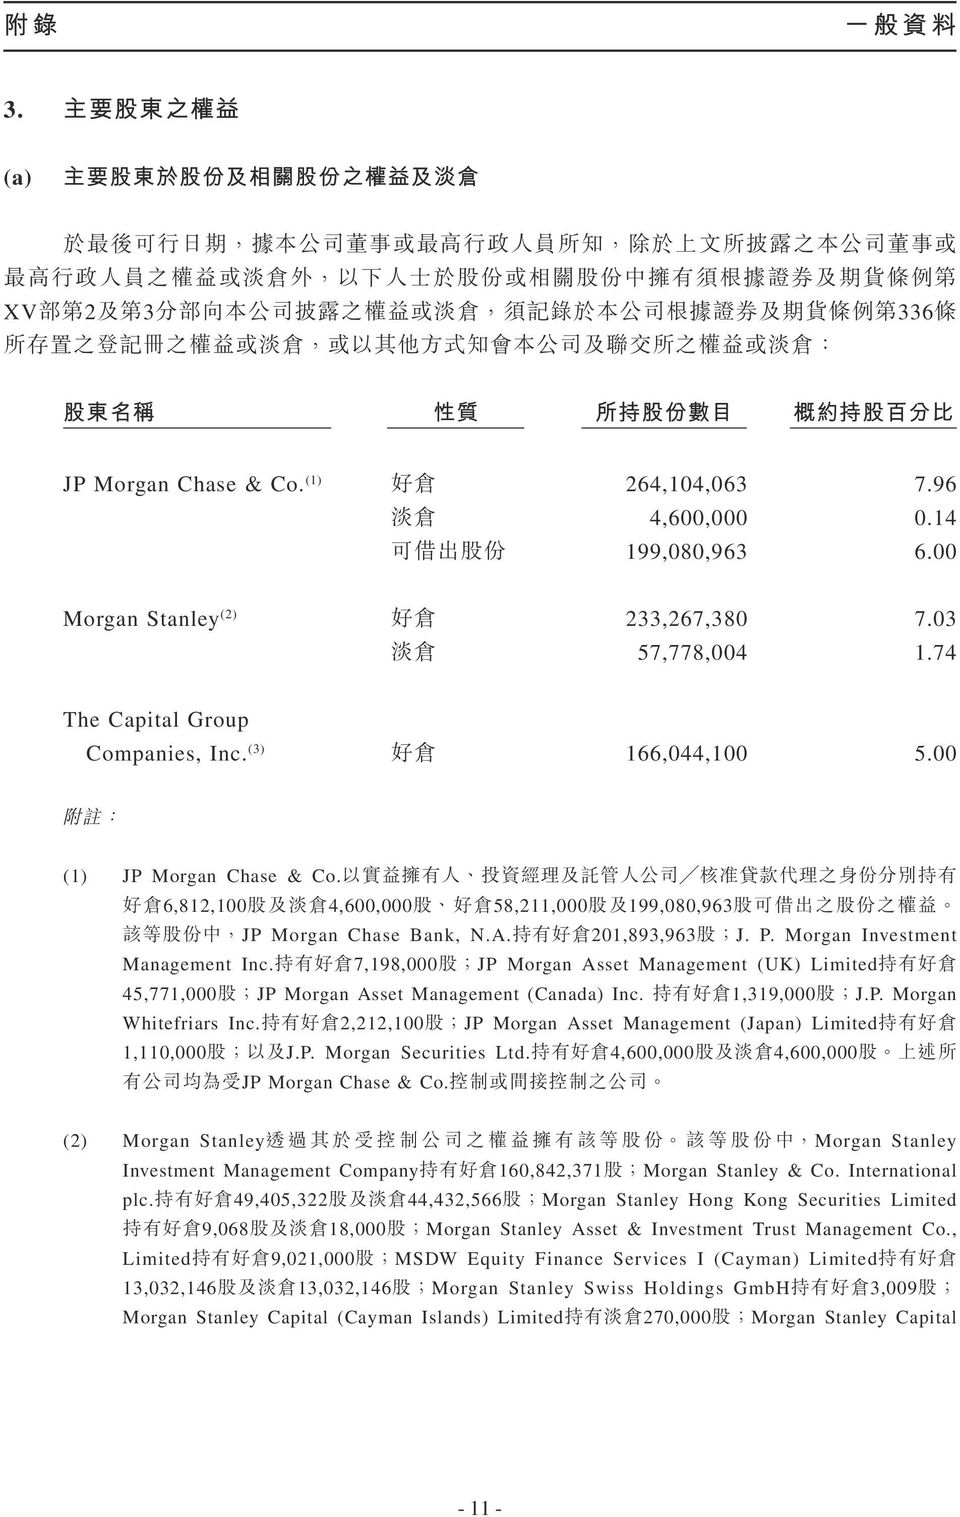 7,19,000JP Morgan Asset Management (UK) Limited 45,771,000JP Morgan Asset Management (Canada) Inc. 1,319,000J.P. Morgan Whitefriars Inc.2,212,100JP Morgan Asset Management (Japan) Limited 1,110,000J.